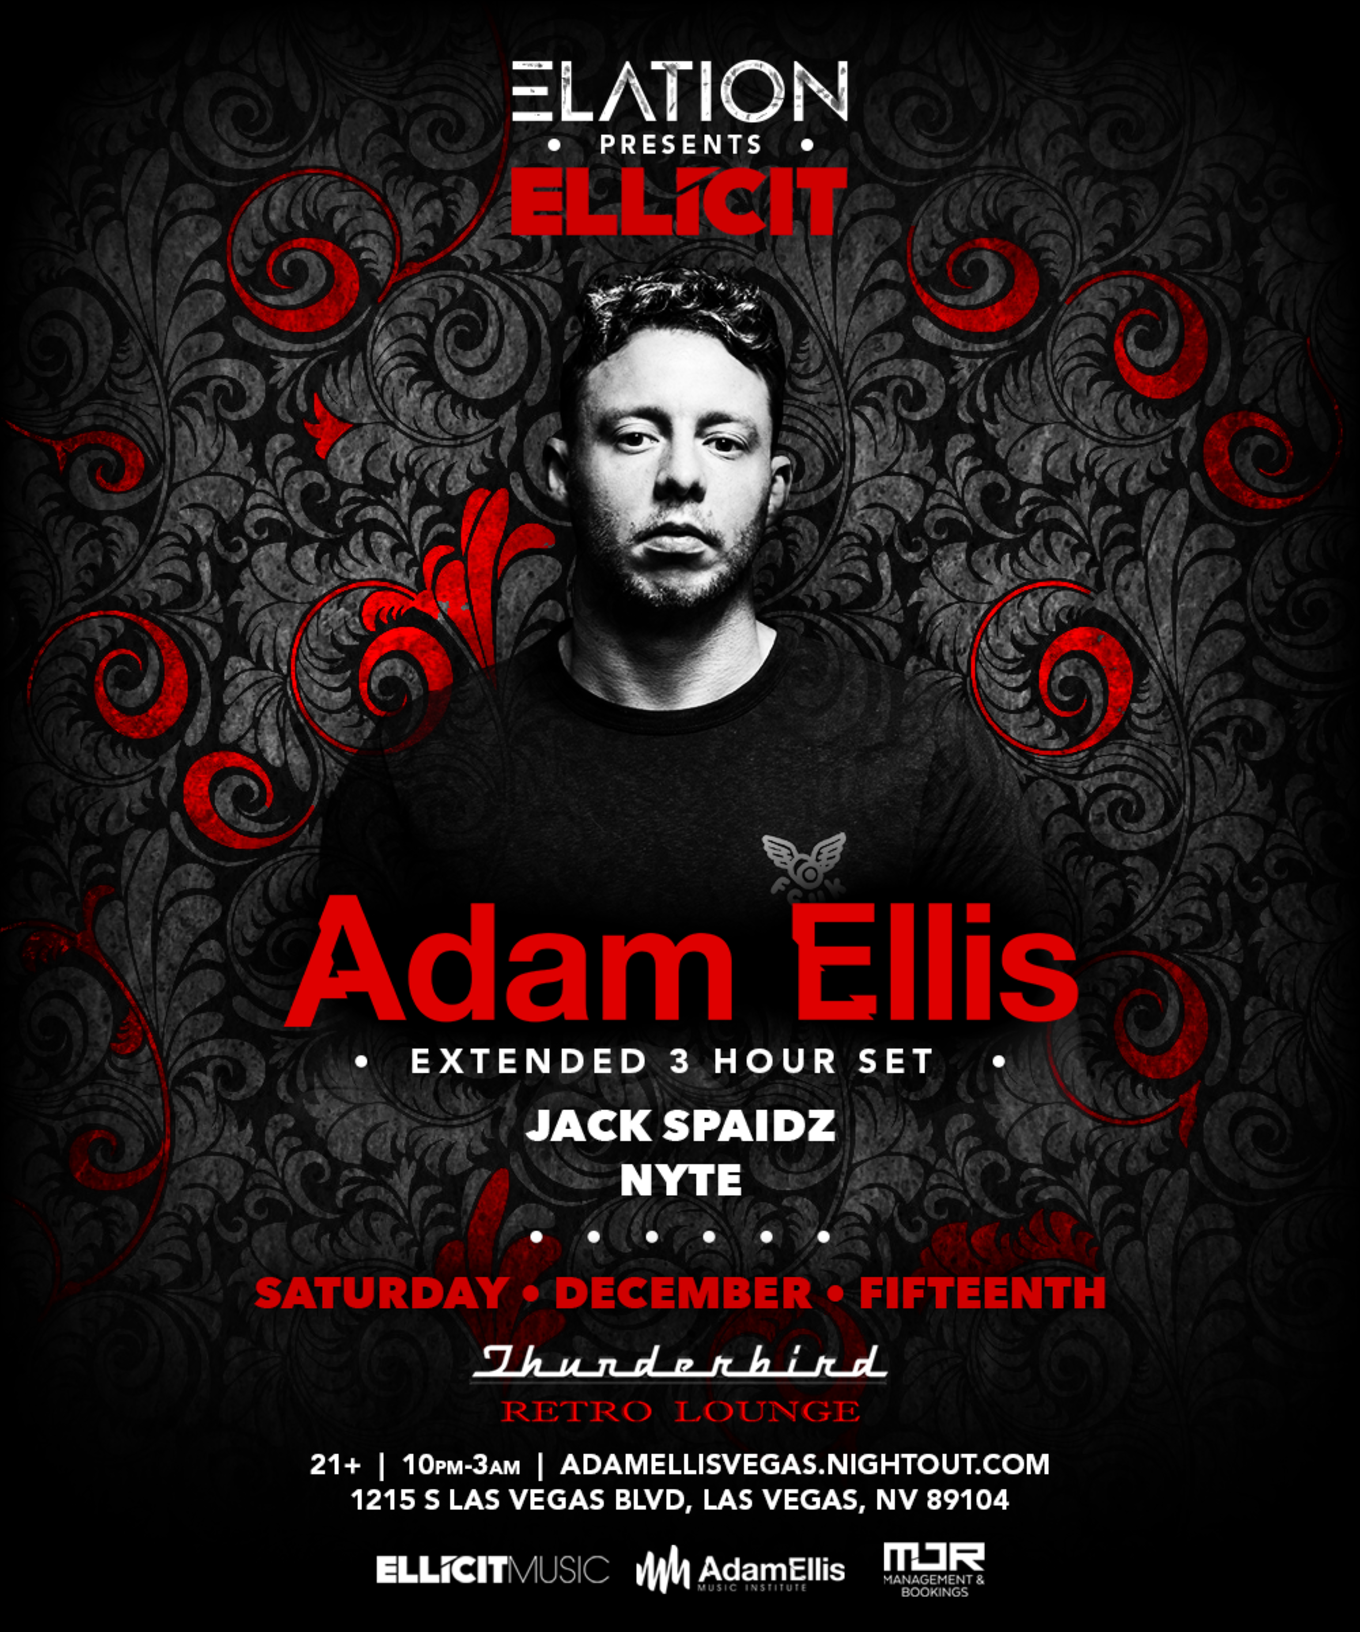 Elation presents Ellicit: Adam Ellis